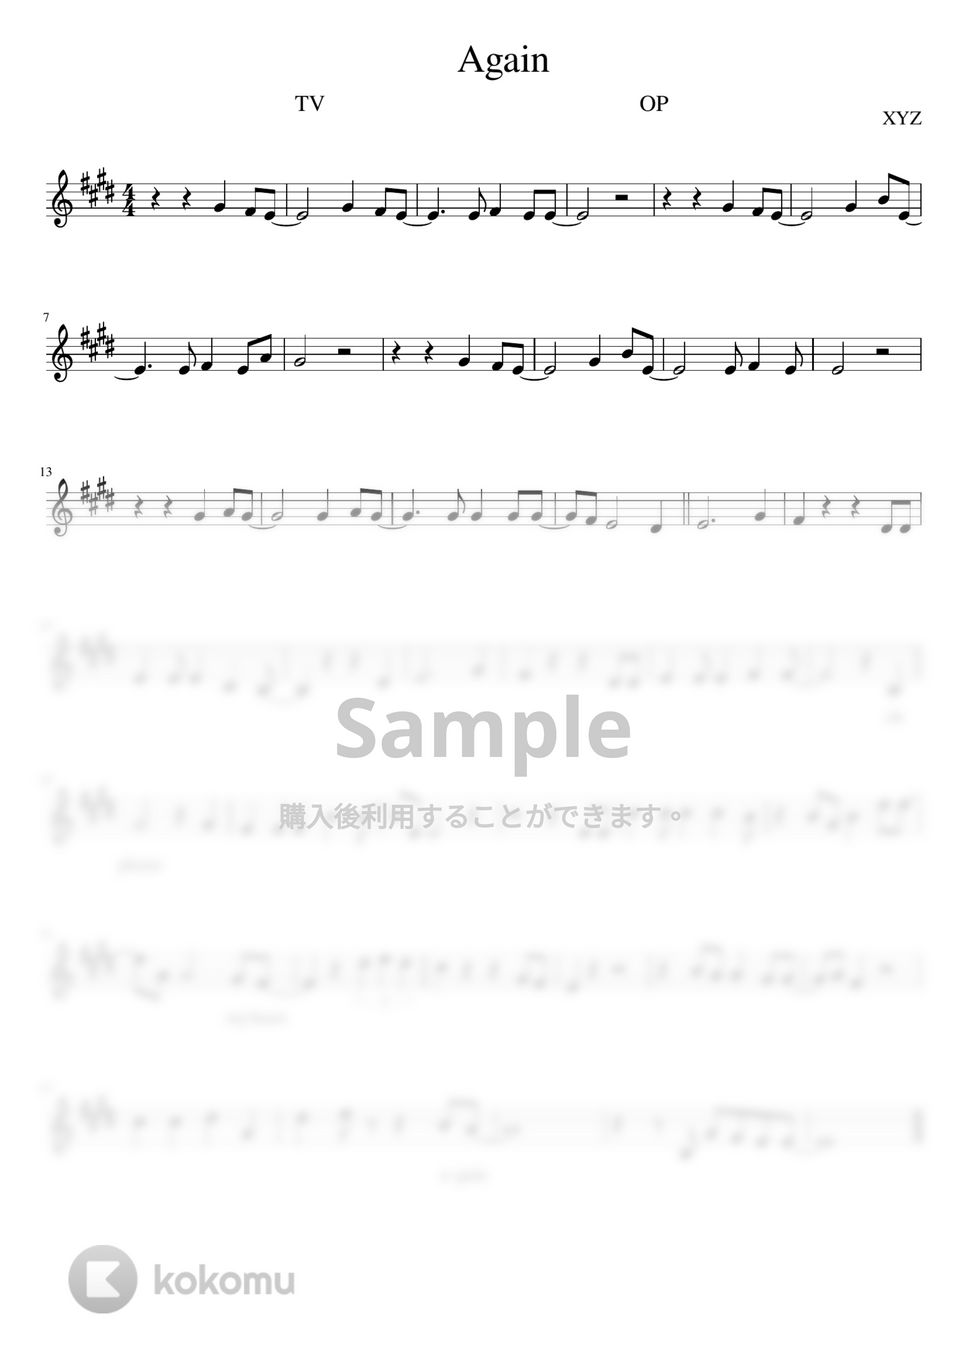 フルーツバスケット - AGAIN (メロディ譜 / 歌詞付き / アニメサイズ) by orinpia music